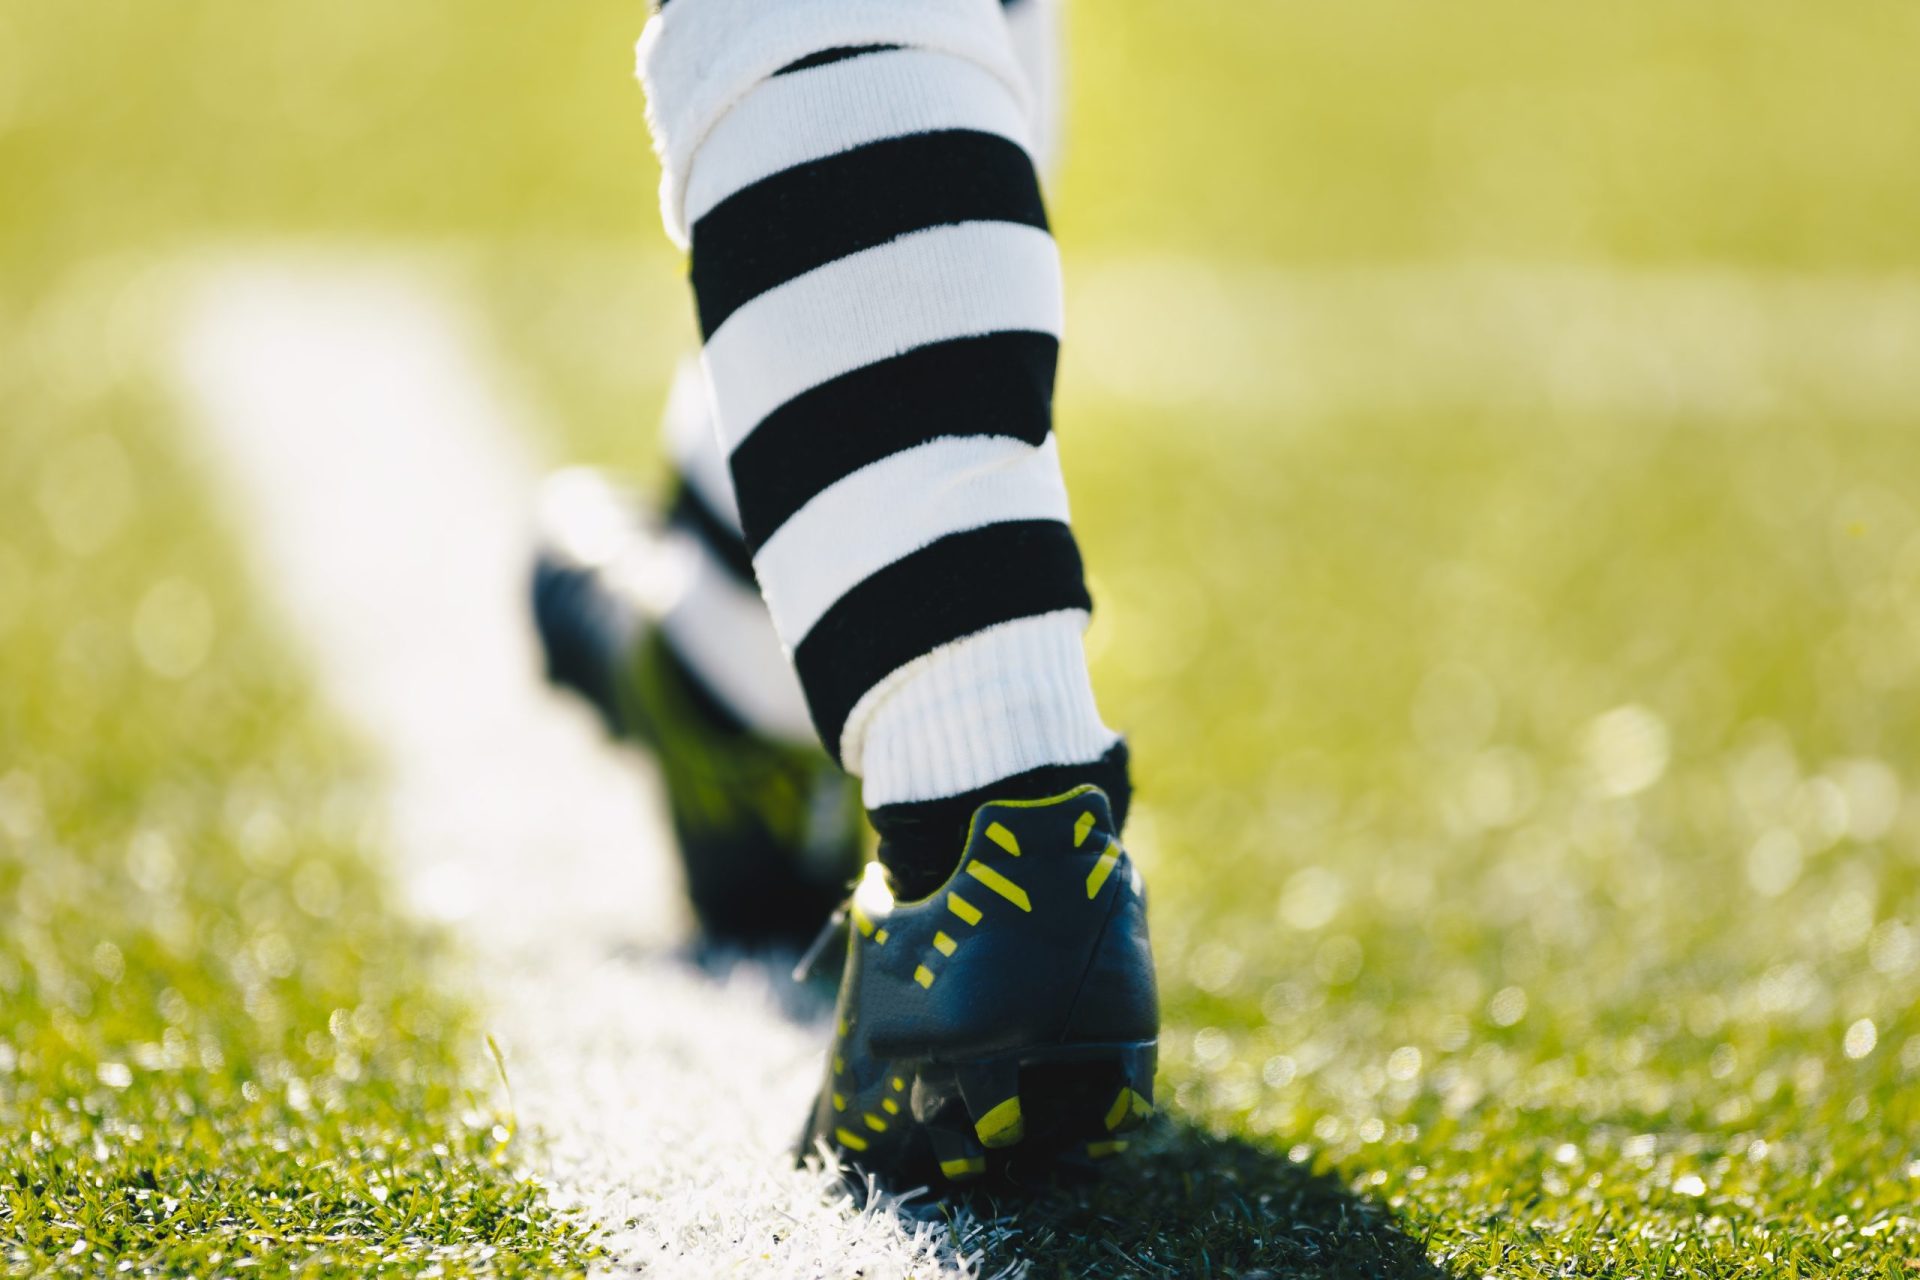 Regresso do futebol? “Cuspidelas deviam ser evitadas, talvez com um amarelo”, diz médico da FIFA